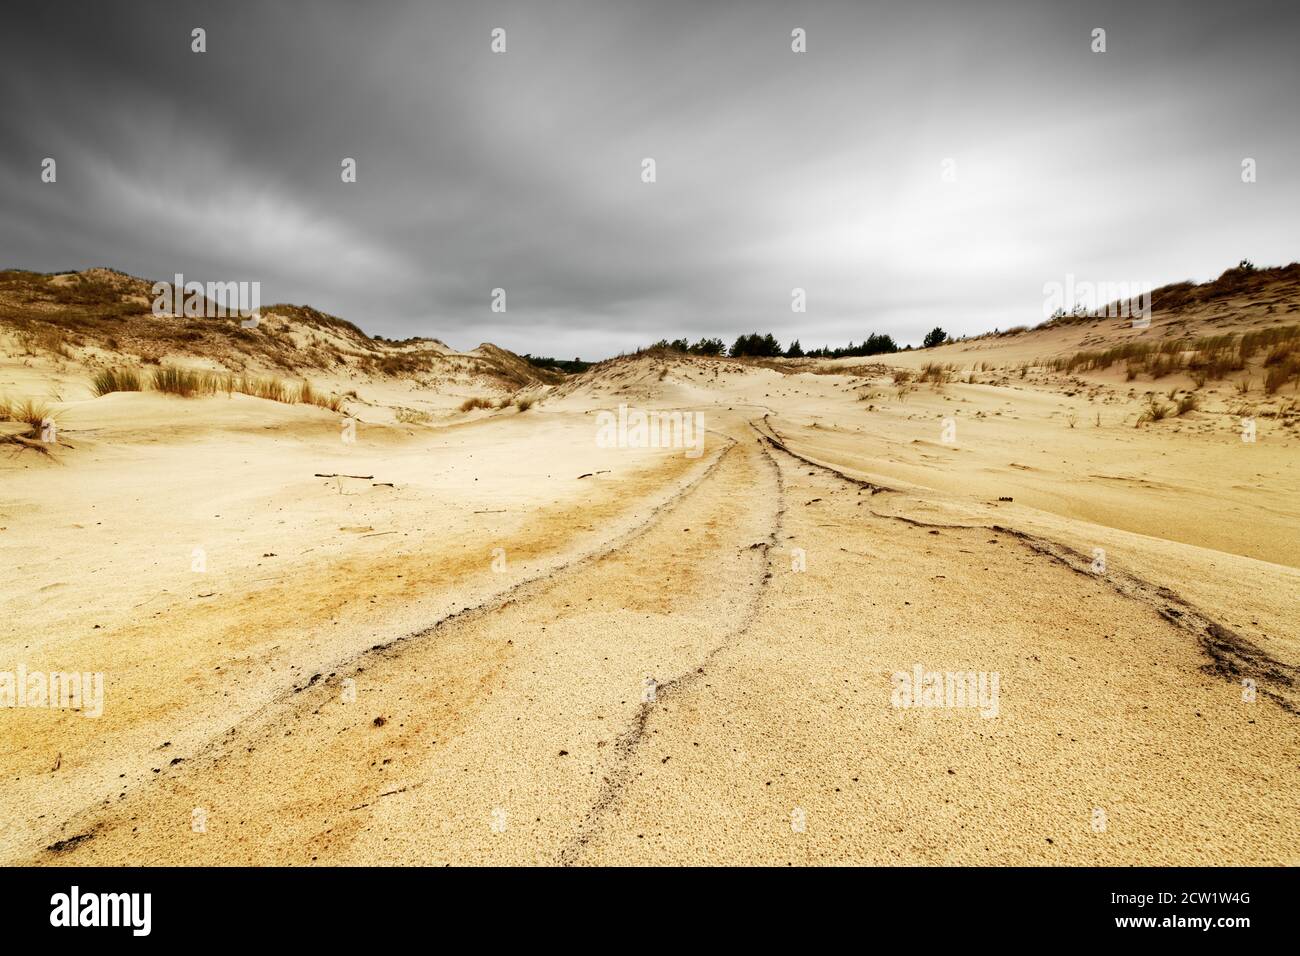 Weite Sandfläche mit teilweise überwucherten Dünen im Hintergrund, markante Linien als Augenführung, Bewegungsspuren der Wolken durch Langzeitbelichtung Stockfoto